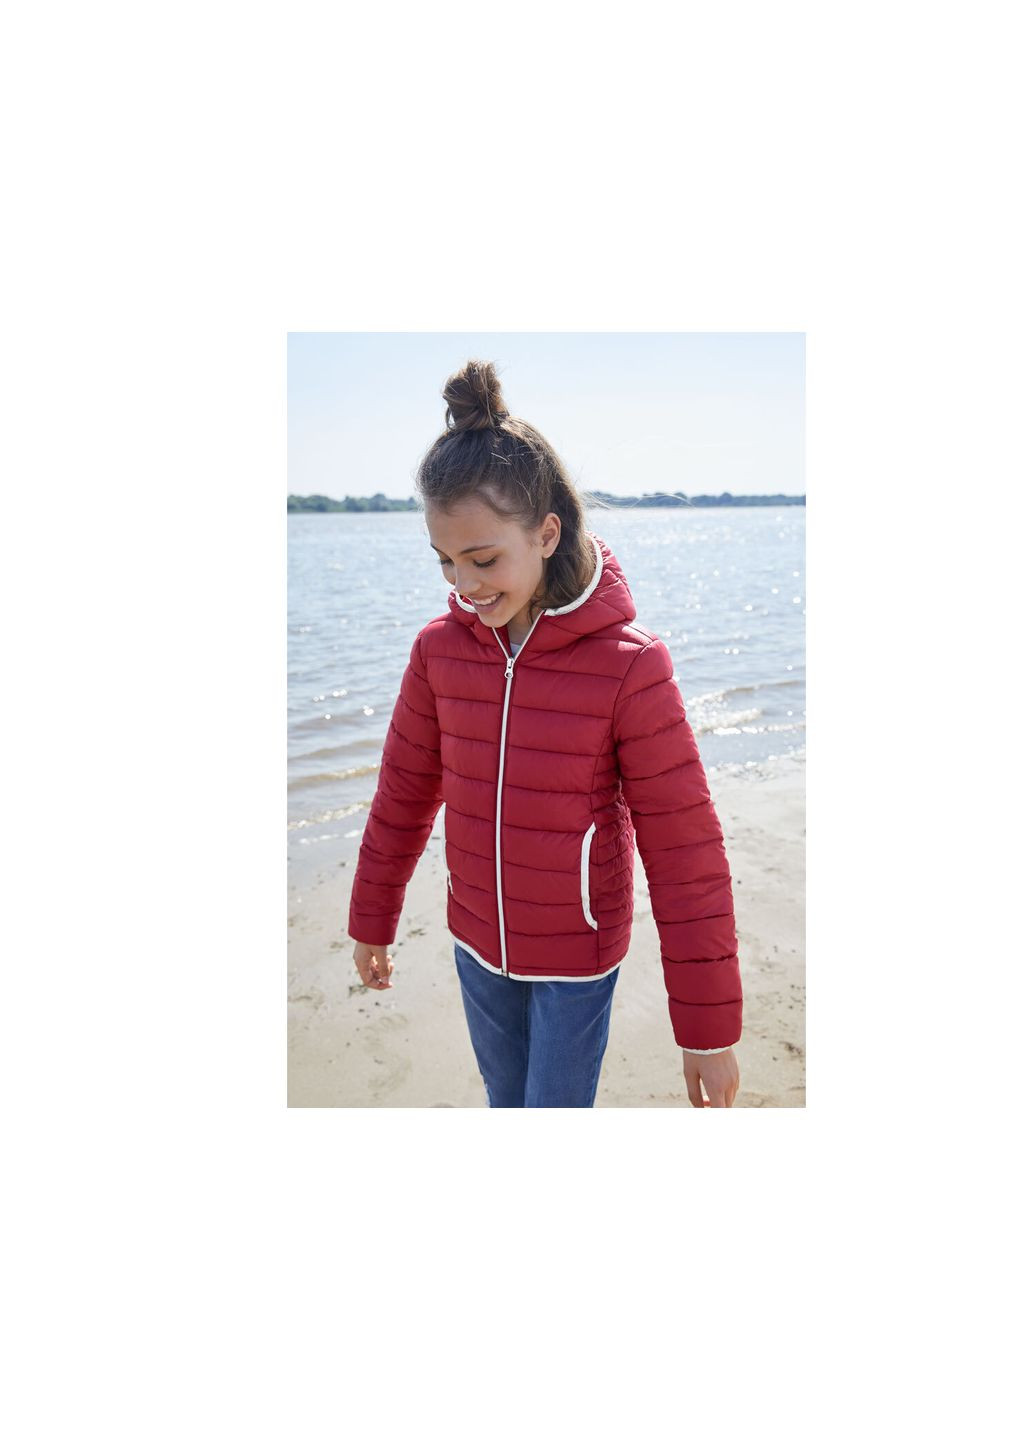 Бордовая демисезонная куртка демисезонная водоотталкивающая и ветрозащитная для девочки 357764 Pepperts